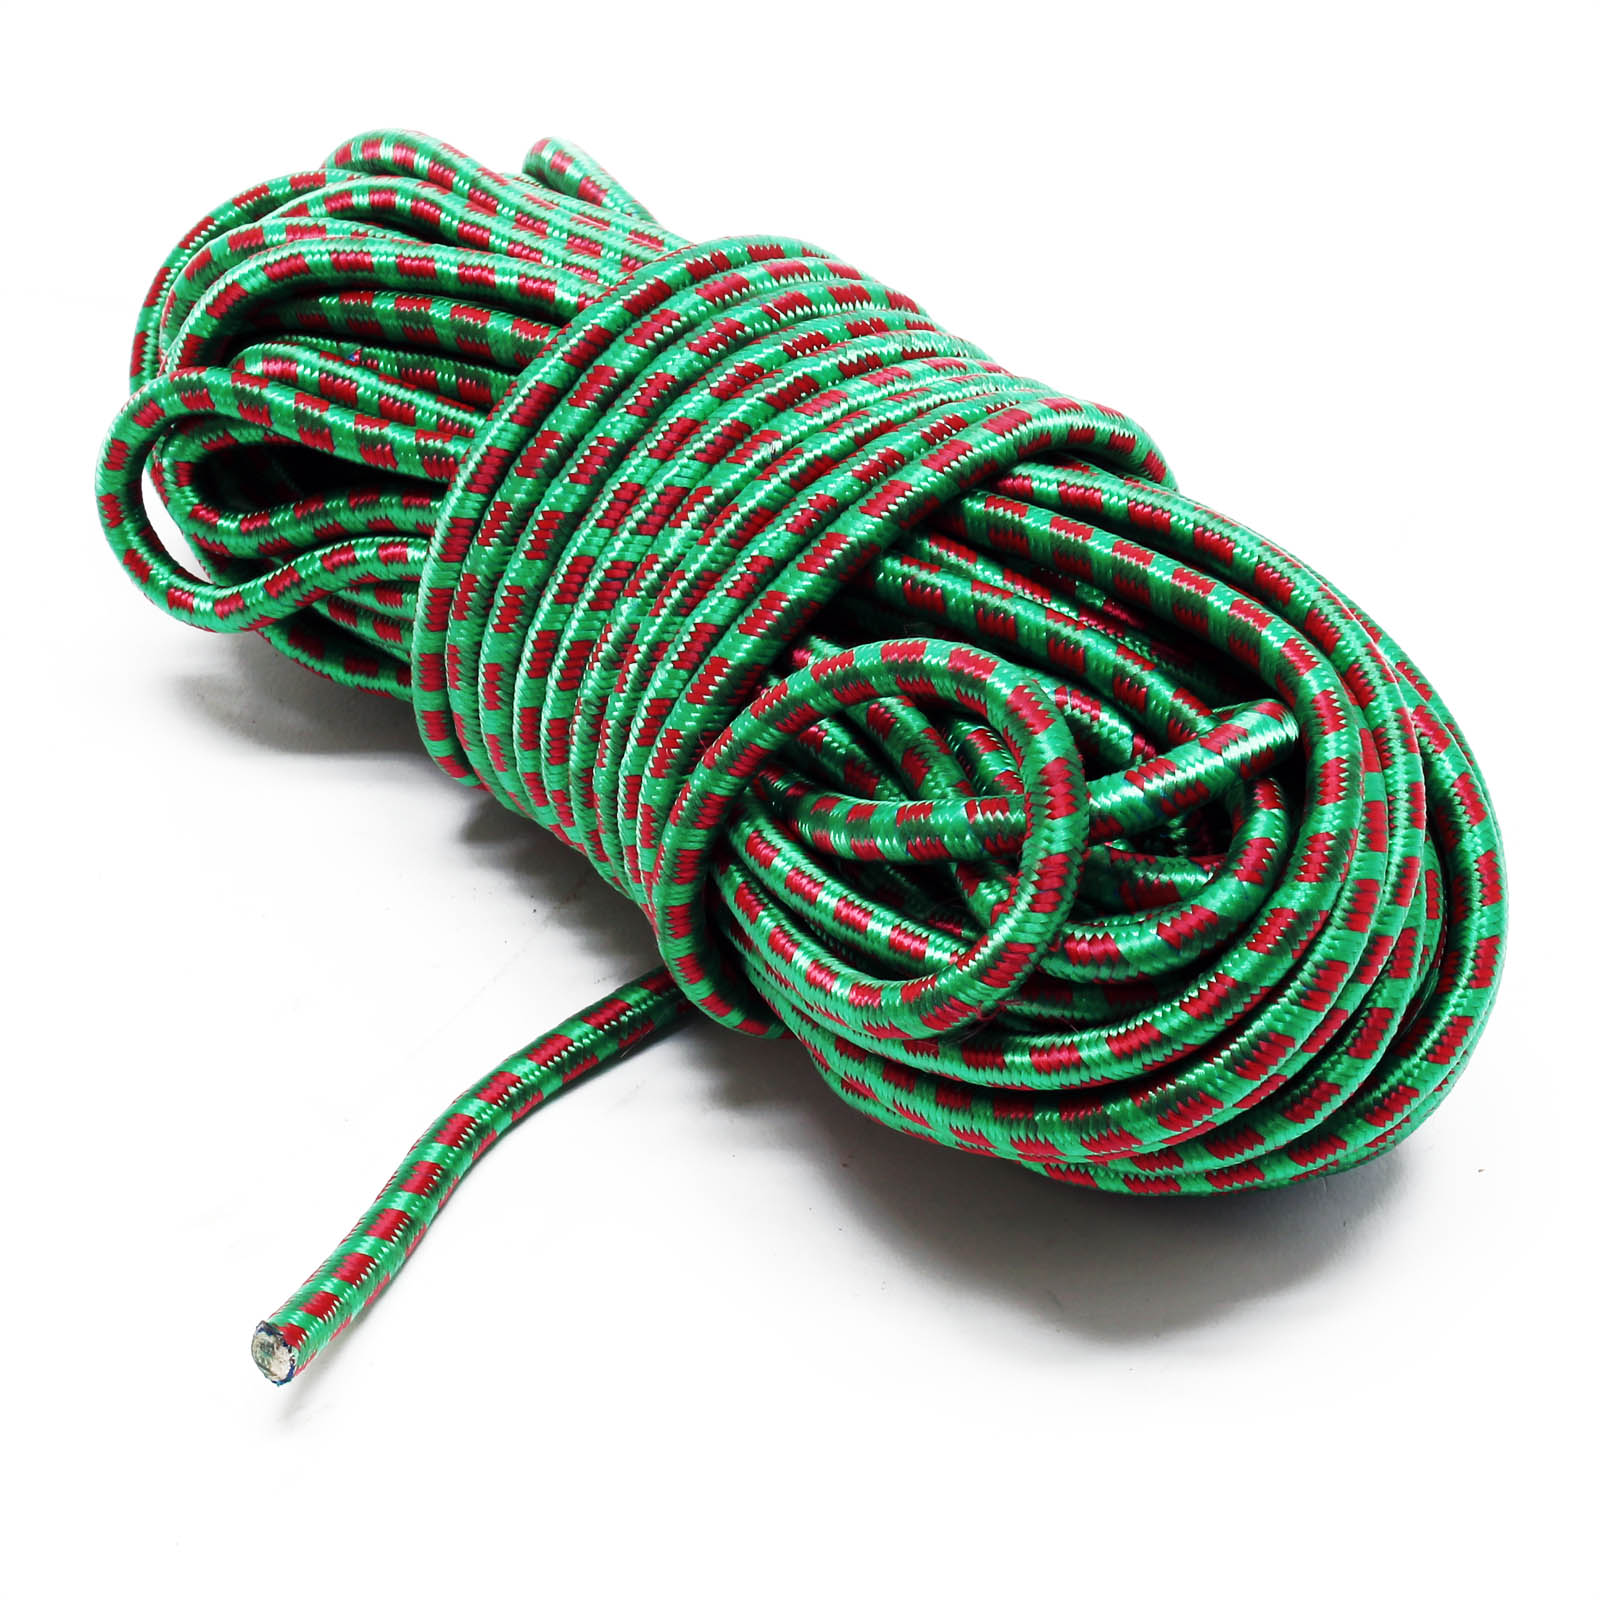 Corde en nylon Ø8mm - Corde de sécurité de 20m